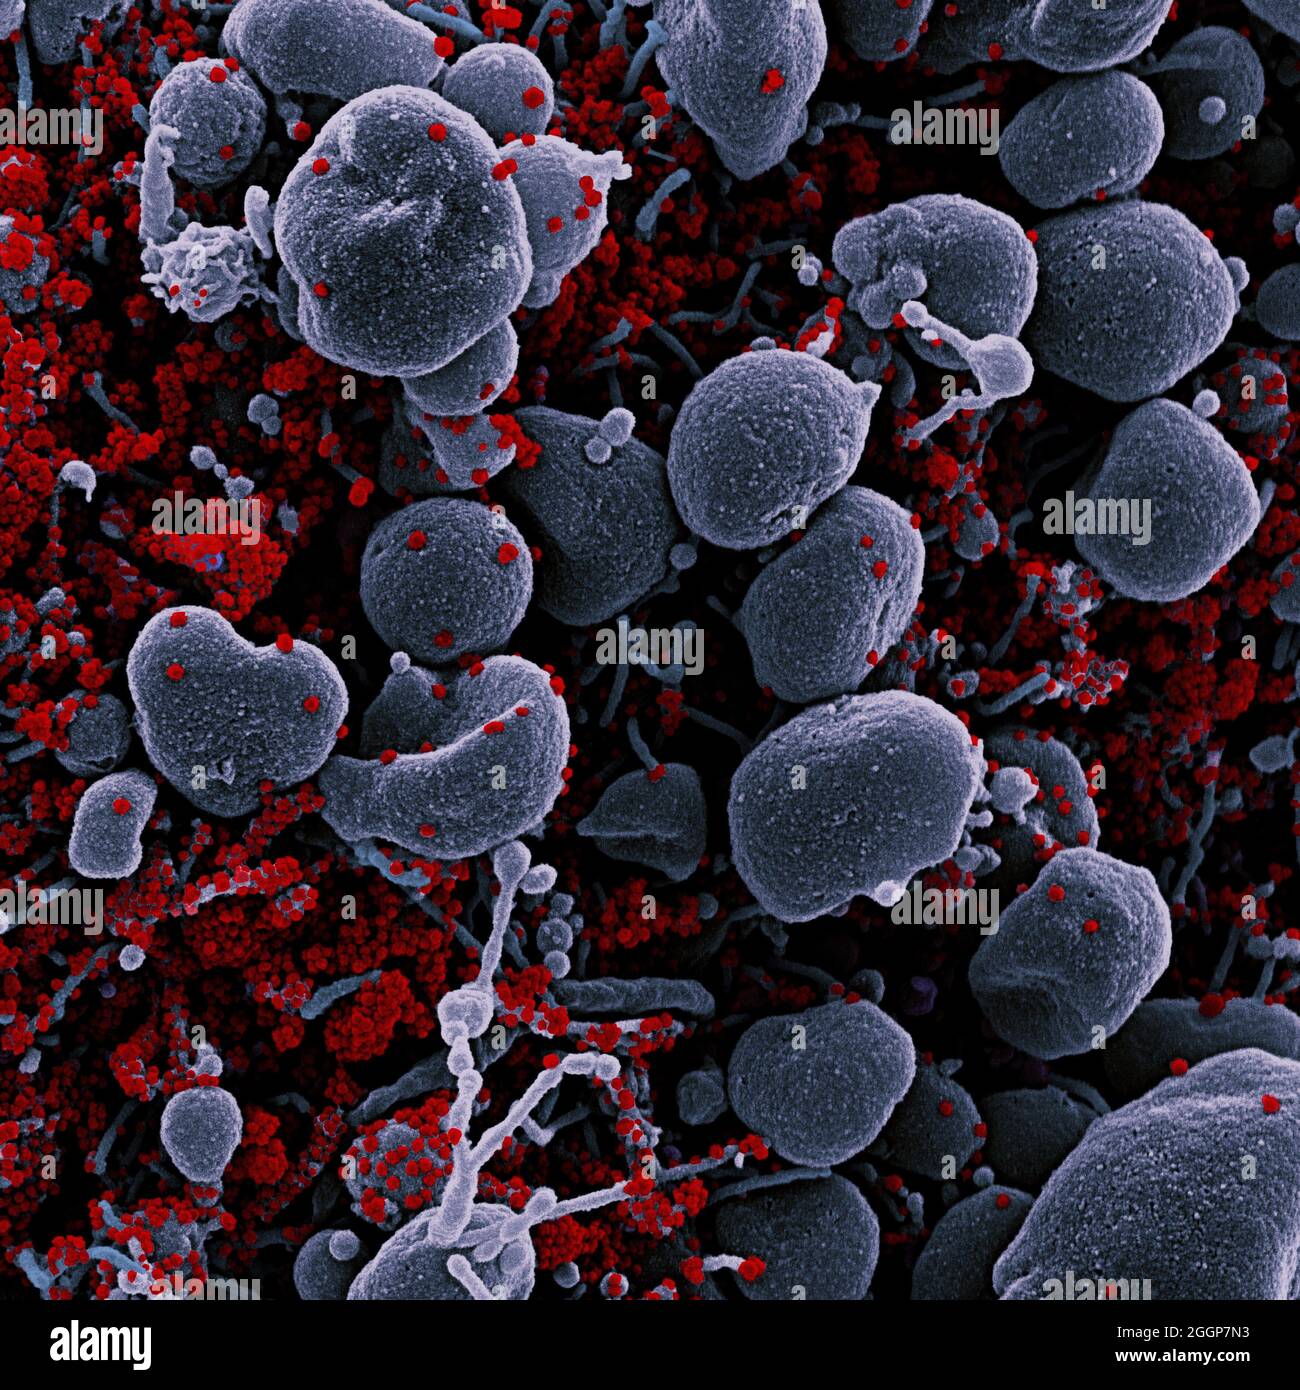 Micrografía electrónica coloreada de una célula apoptótica (gris) muy infectada con partículas del virus SARS-CoV-2 (rojo), aislada de una muestra de paciente. Foto de stock